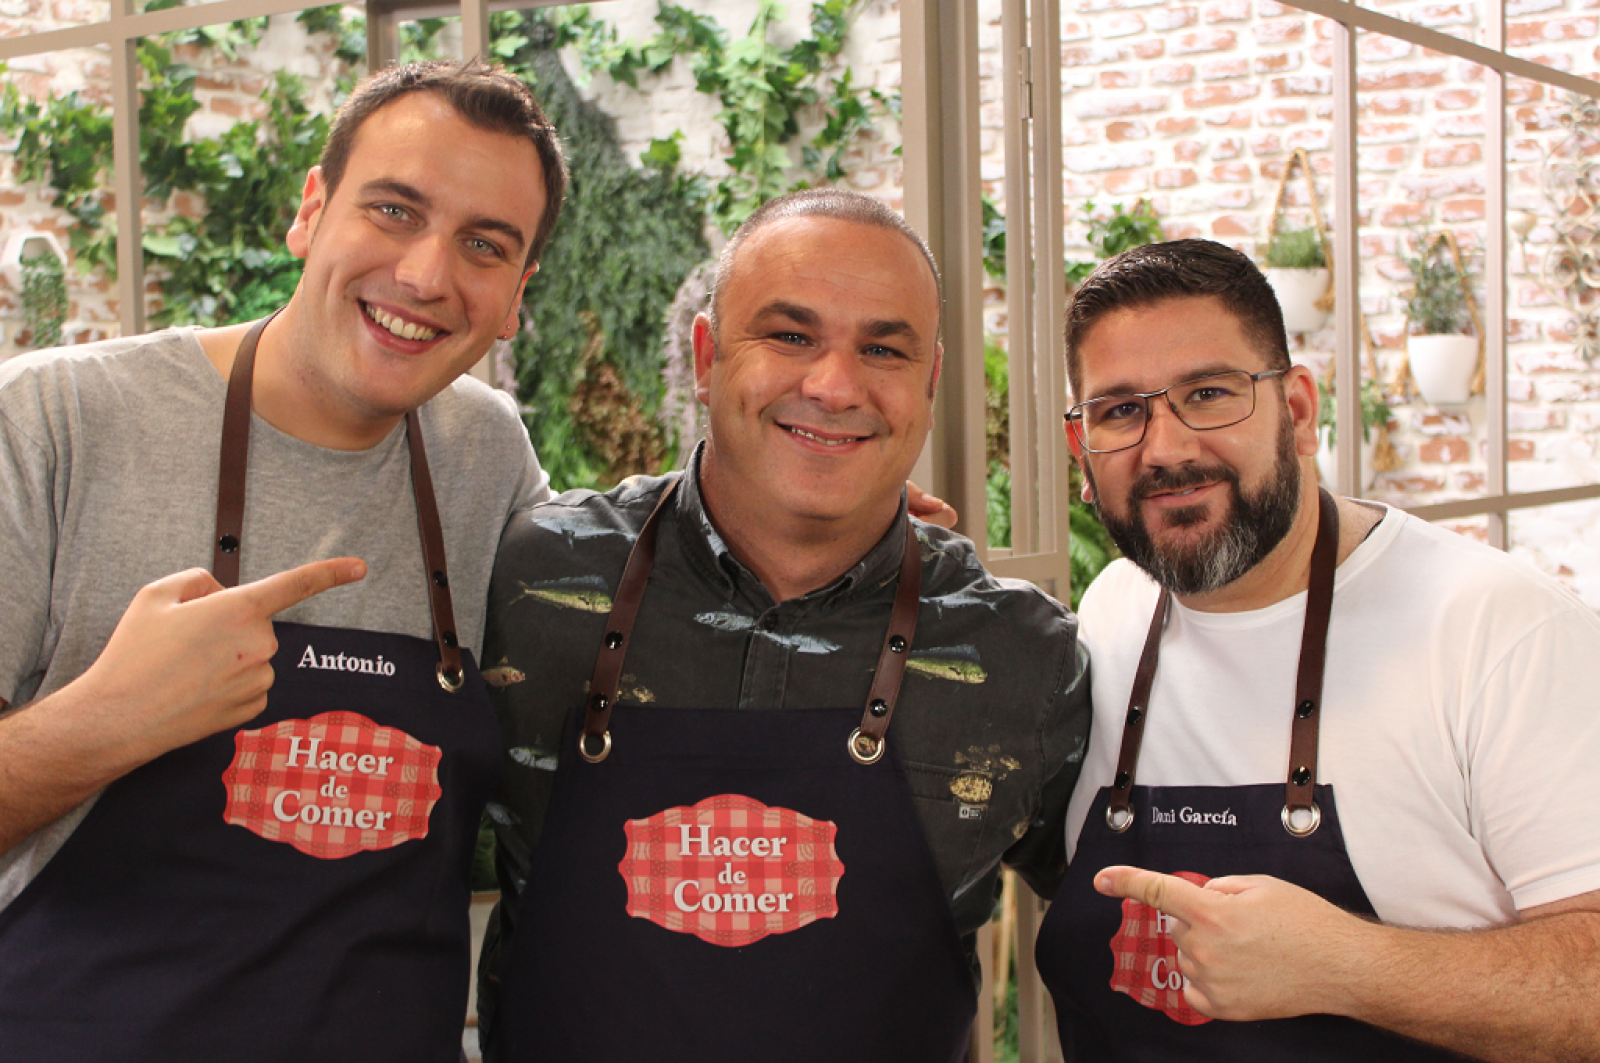 El chef Ángel León visita "Hacer de comer"